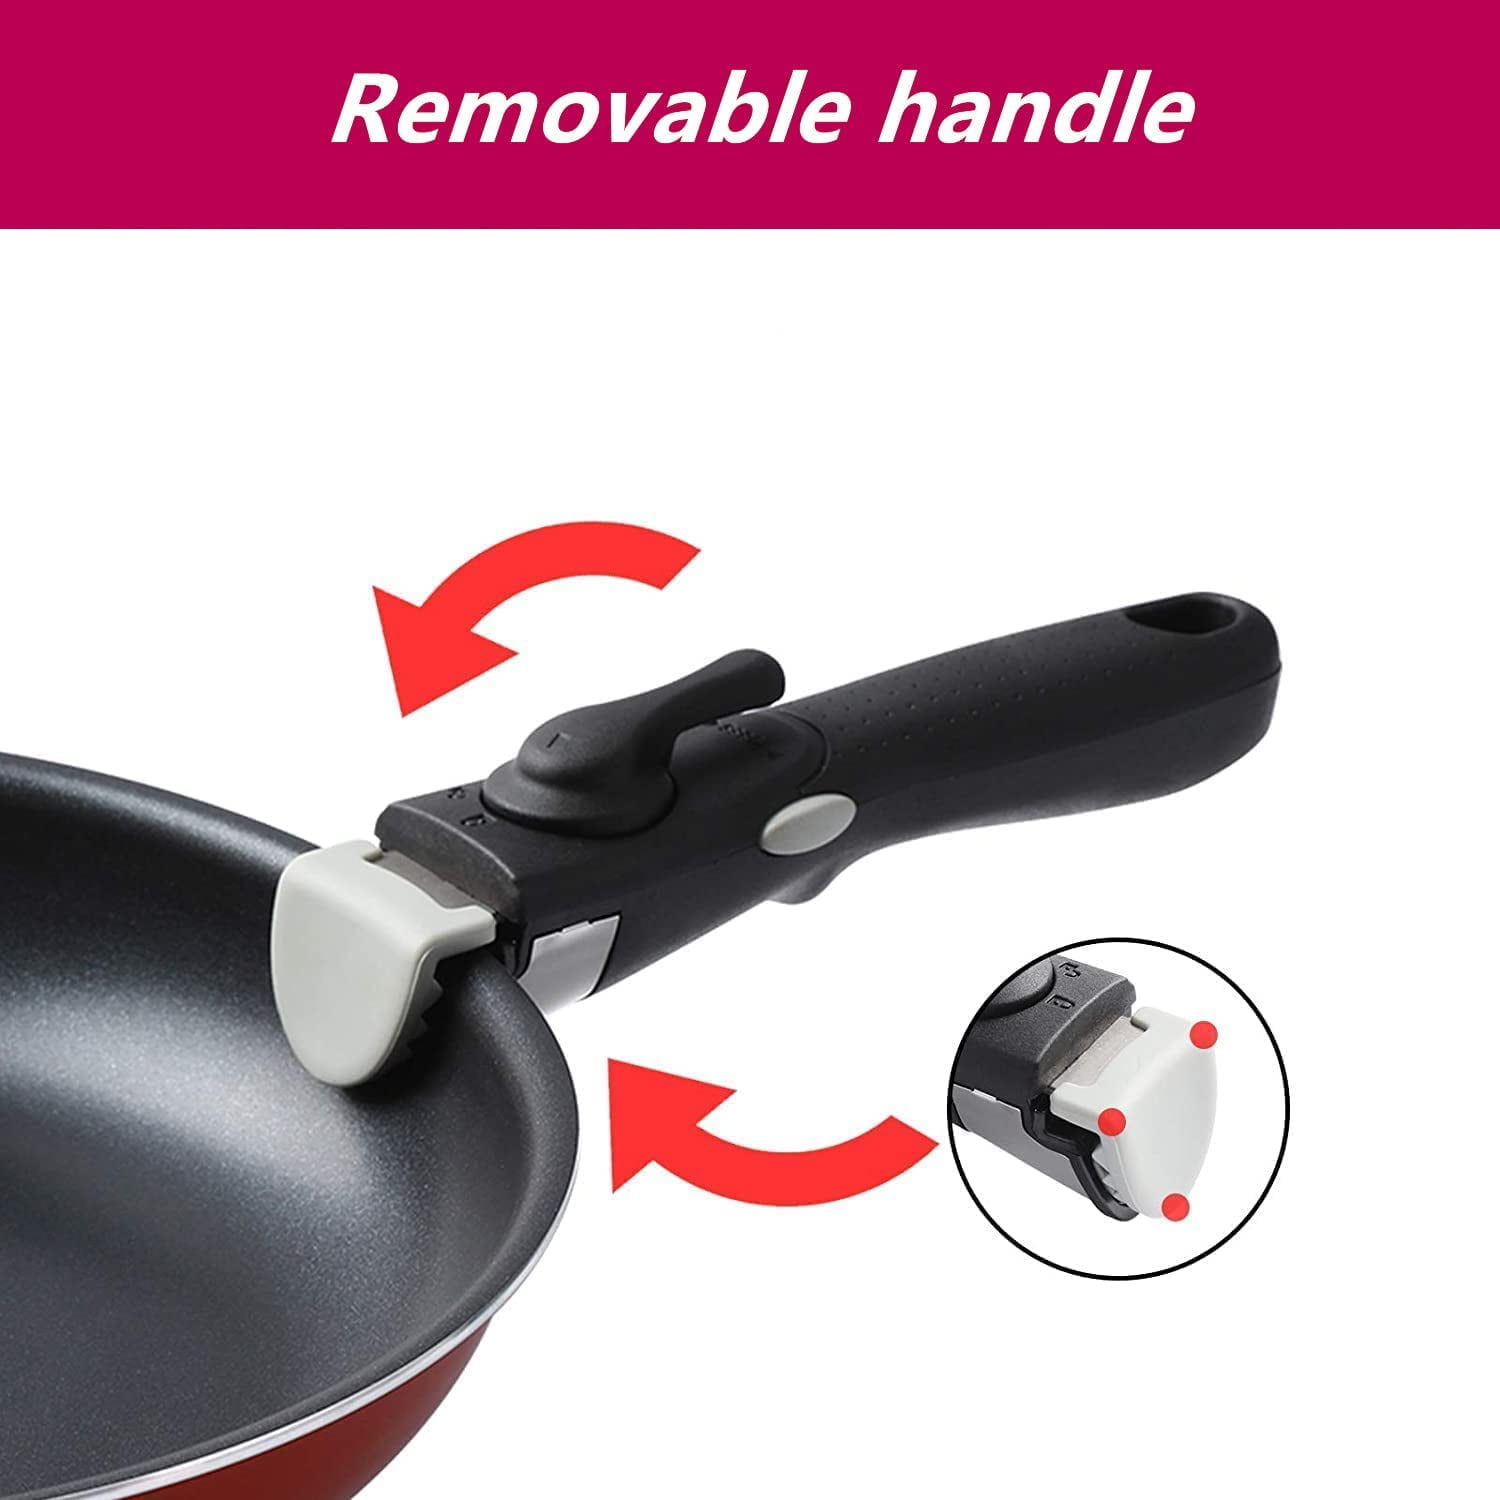 Motase 12pcs Pots and Pans Set, Nonstick Cookware Sets Detachable Handle, Induction Kitchen Cookware Set Non Stick with Removable Handle, RV